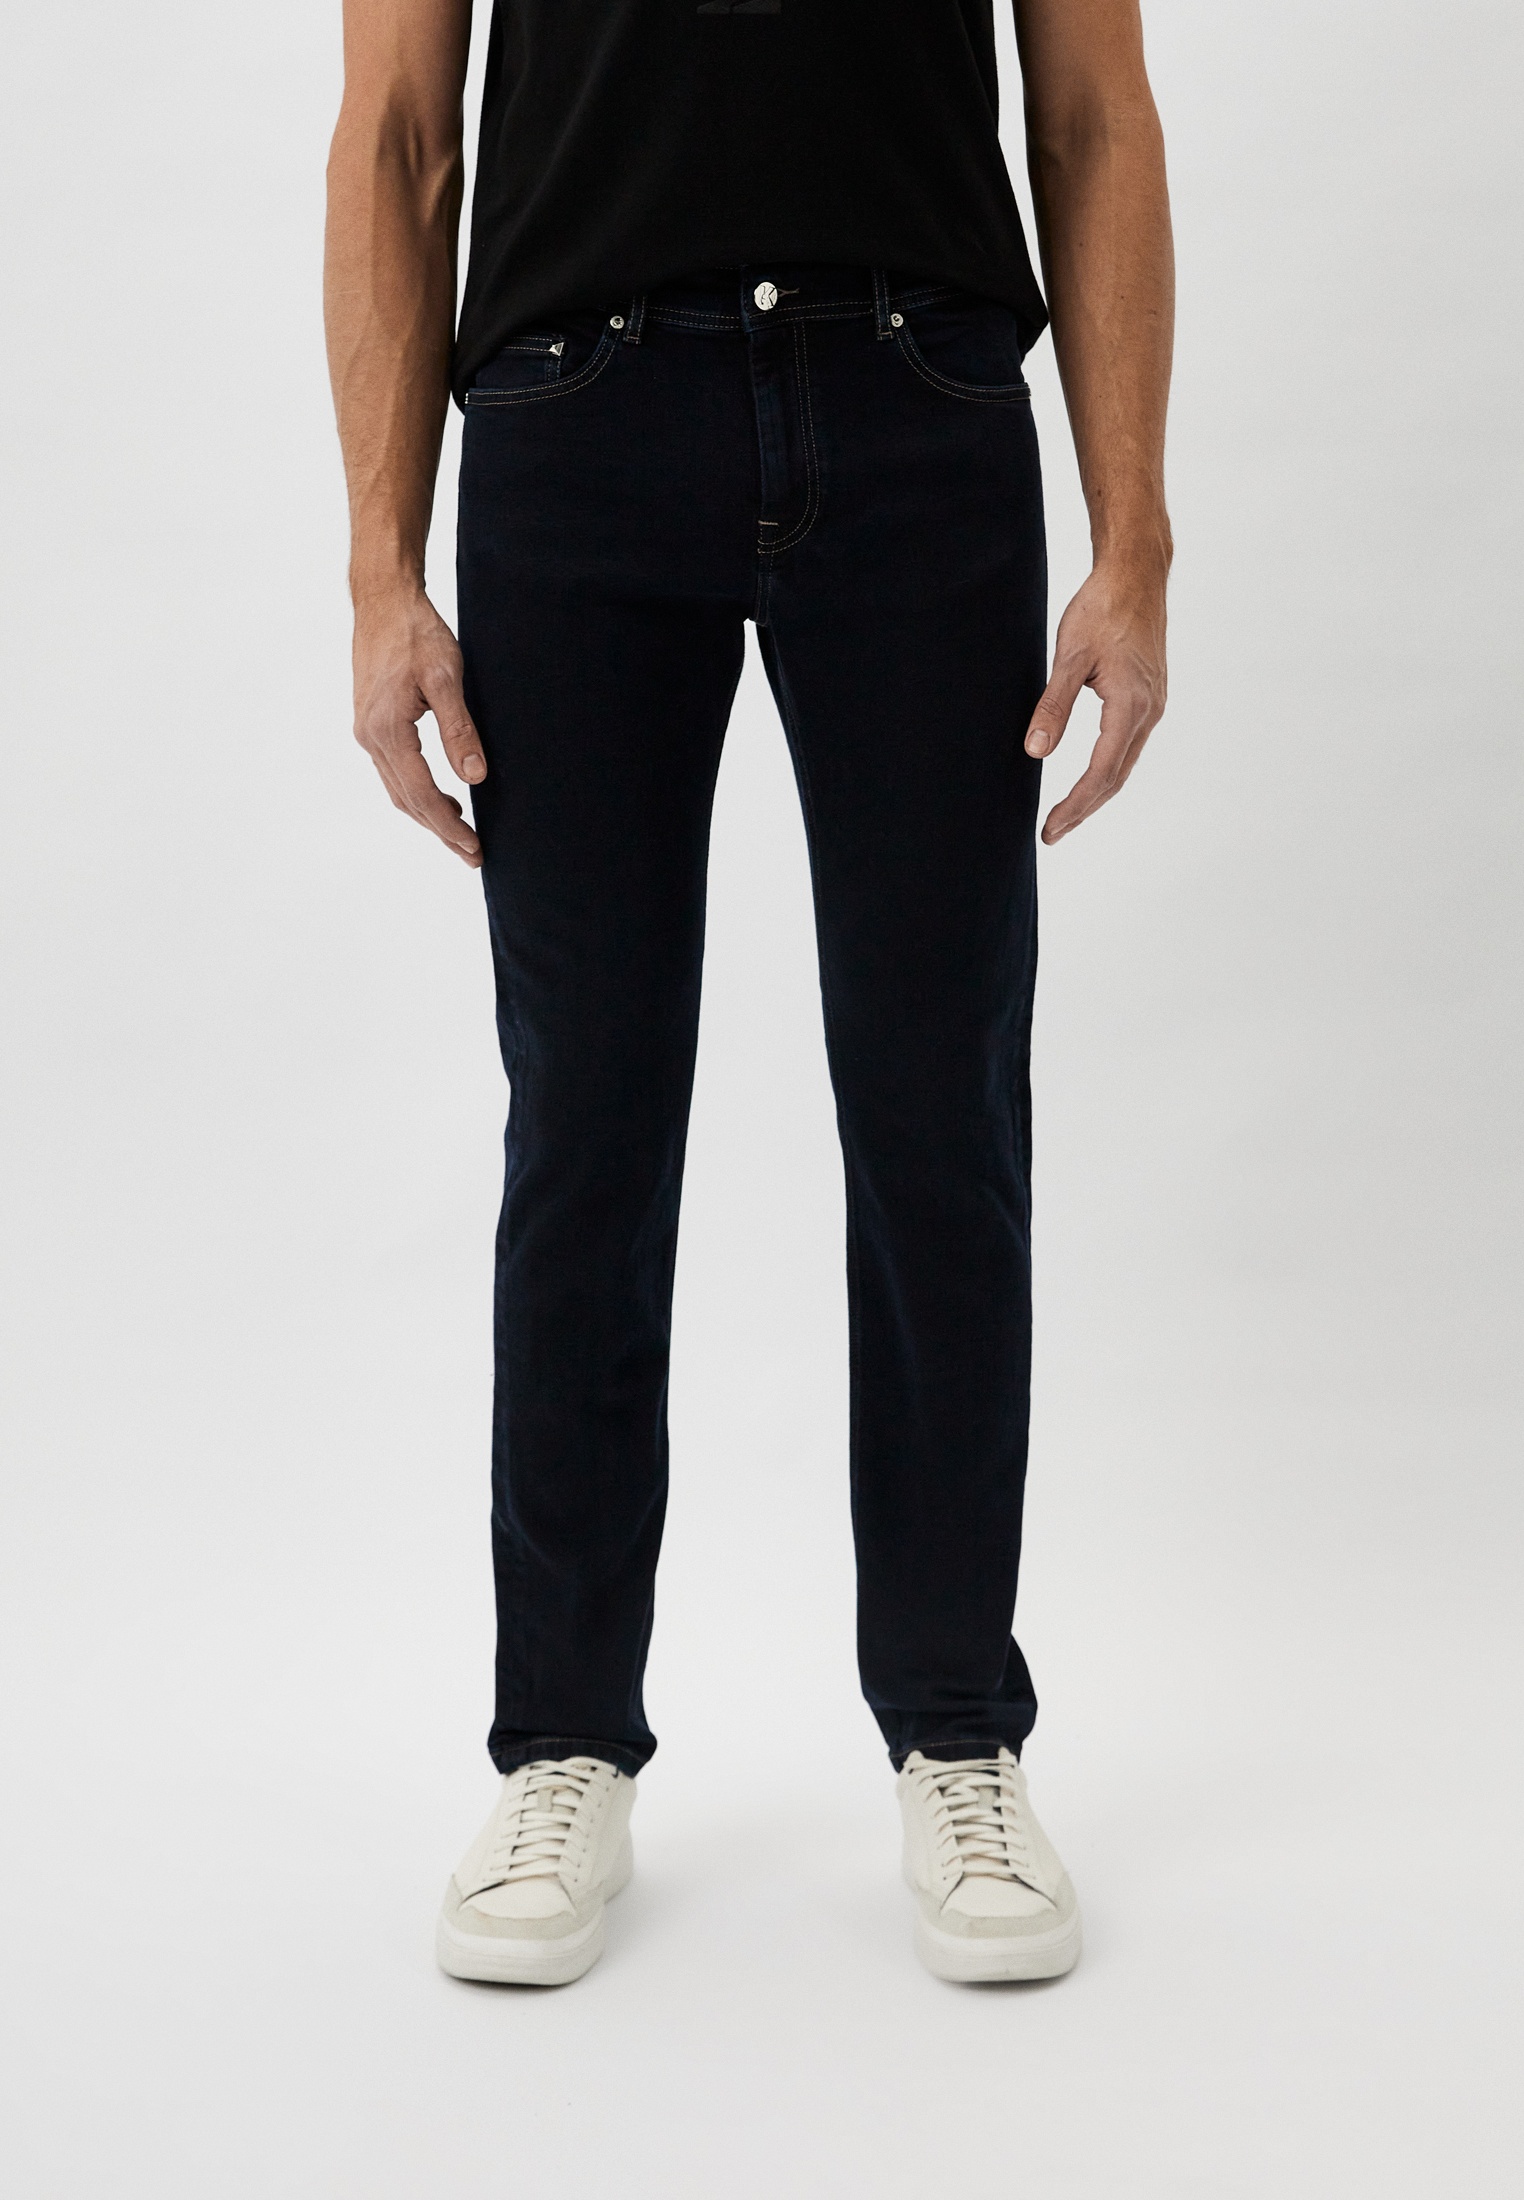 Мужские зауженные джинсы Karl Lagerfeld (Карл Лагерфельд) 265840-500830: изображение 13